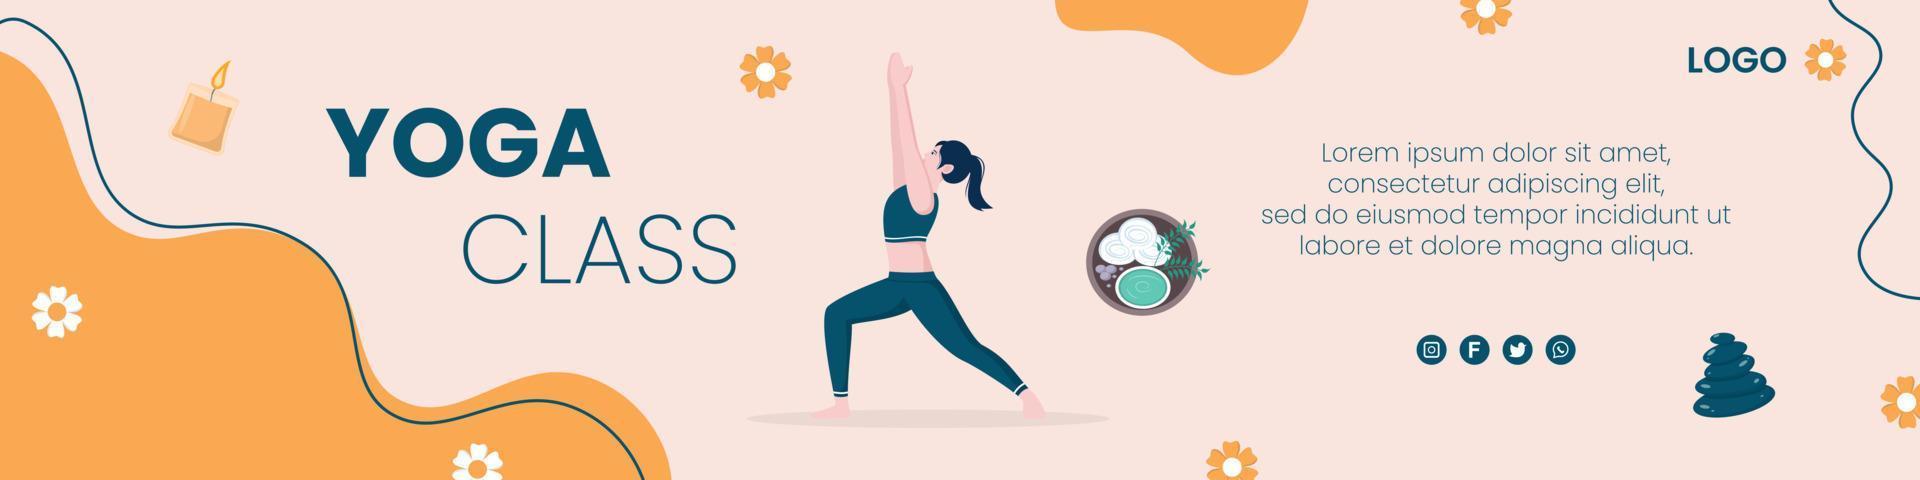 Yoga- und Meditations-Cover bearbeitbar mit quadratischem Hintergrund, geeignet für soziale Medien, ig-Feed, Karten, Grüße, Print- und Web-Internet-Anzeigen vektor